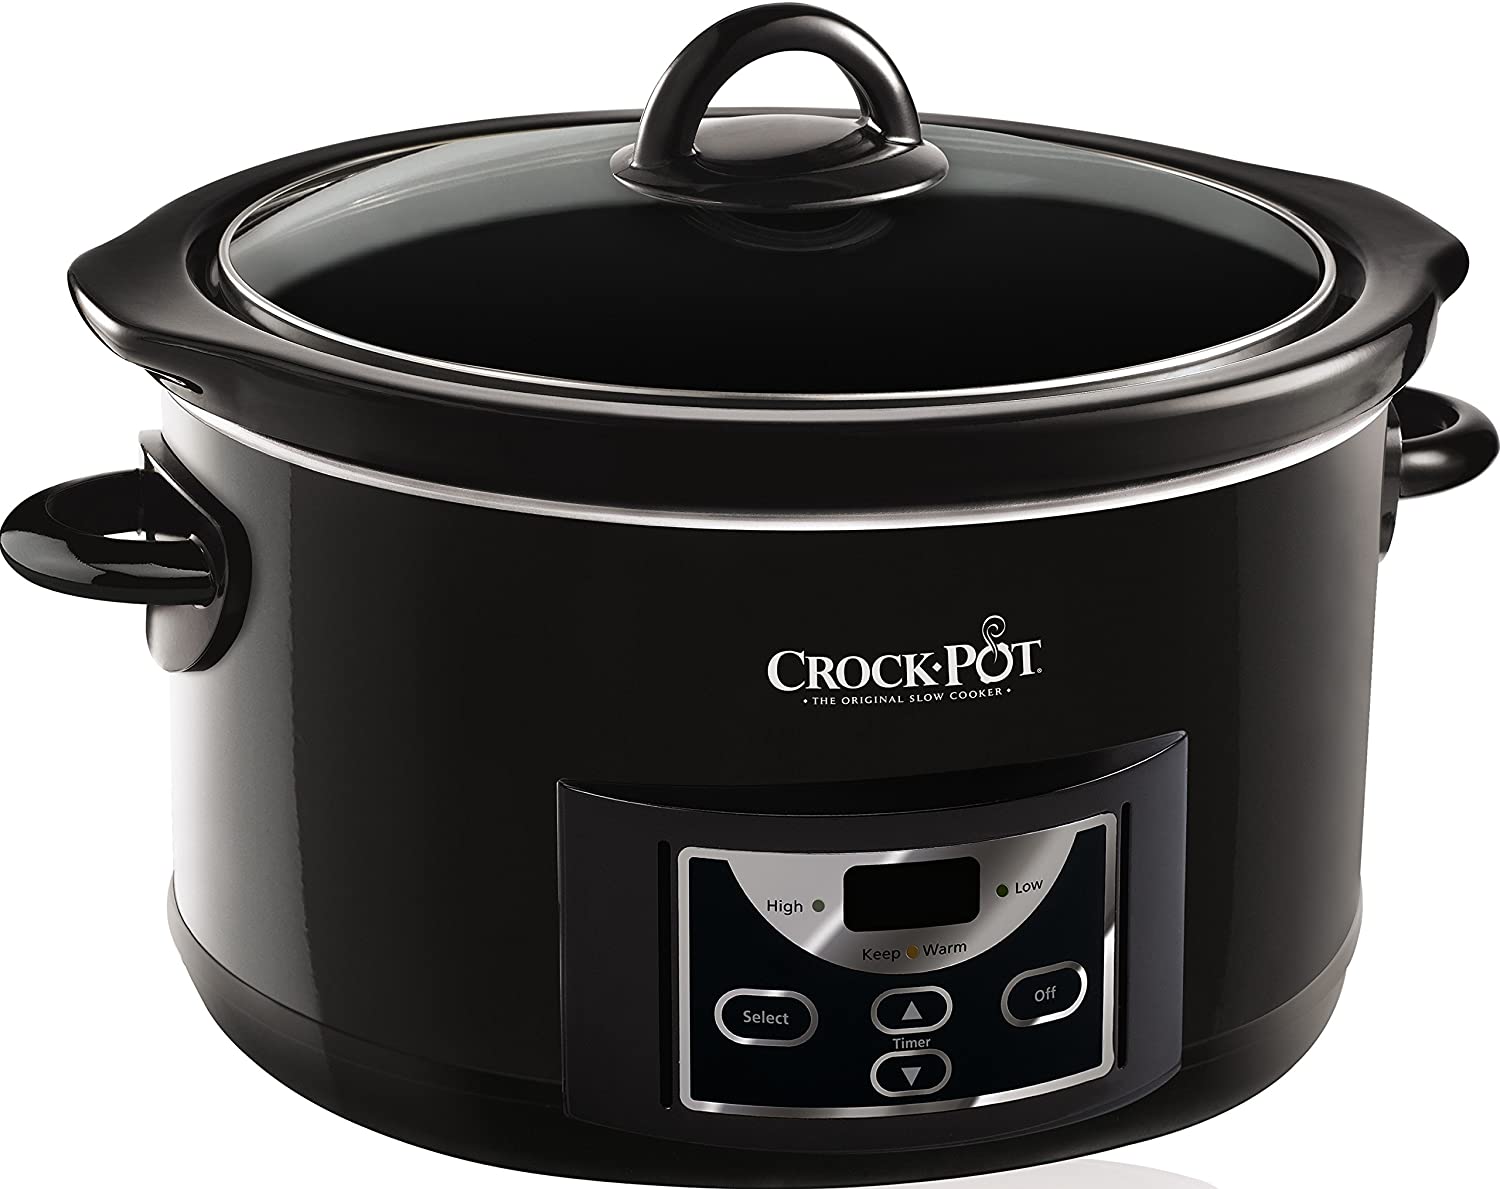 ik ben trots nakoming opblijven Crockpot Slowcooker CR507 4.7 Liter kopen? | Cookinglife